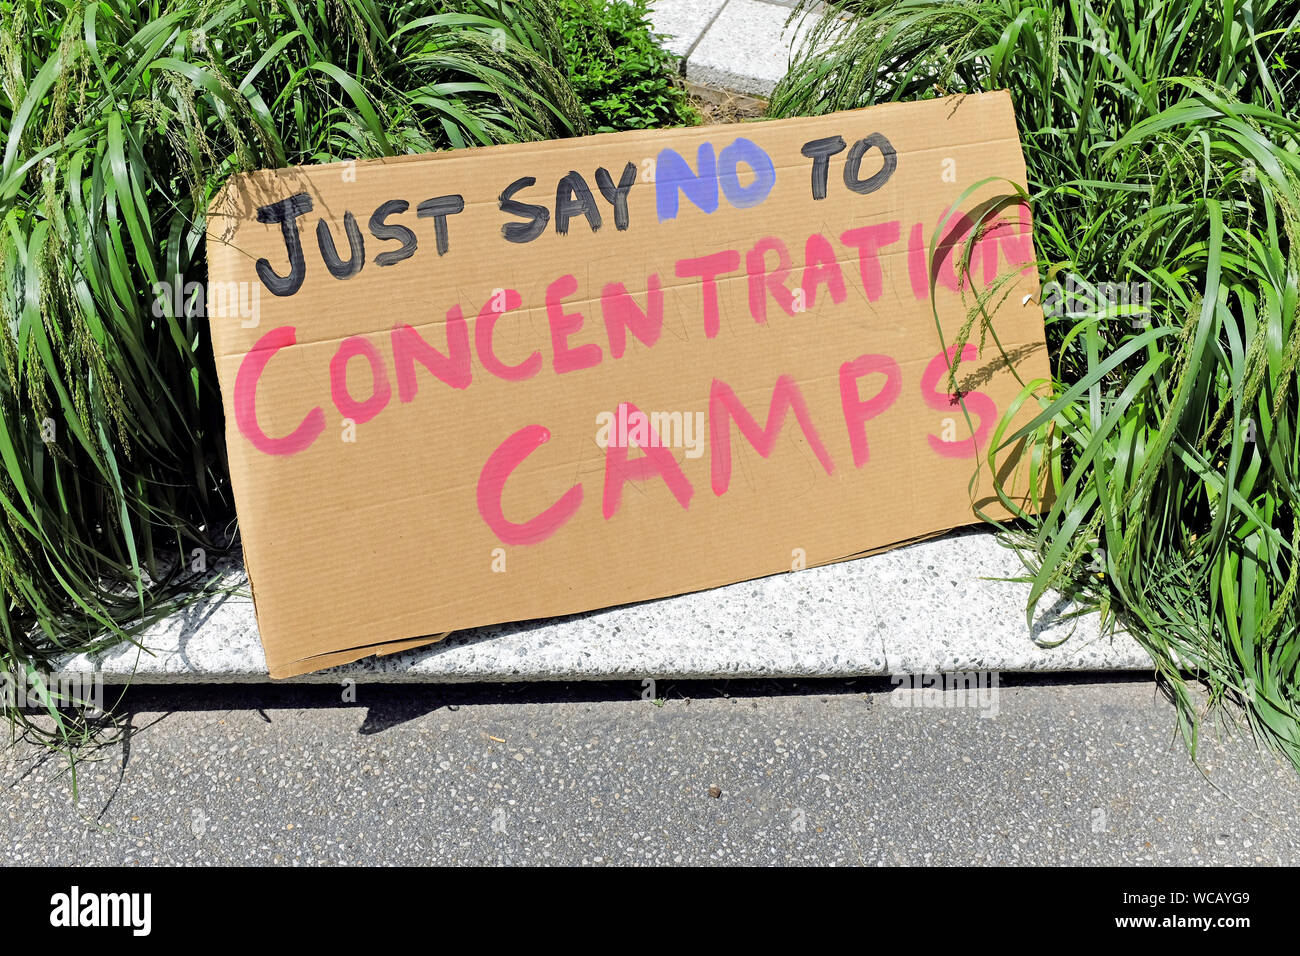 Un cartello di cartone fatto a mano in un raduno del 2018 contro il trattamento degli immigrati da parte dell'amministrazione Trump dichiara "Just Say No to Concentration Camps". Foto Stock